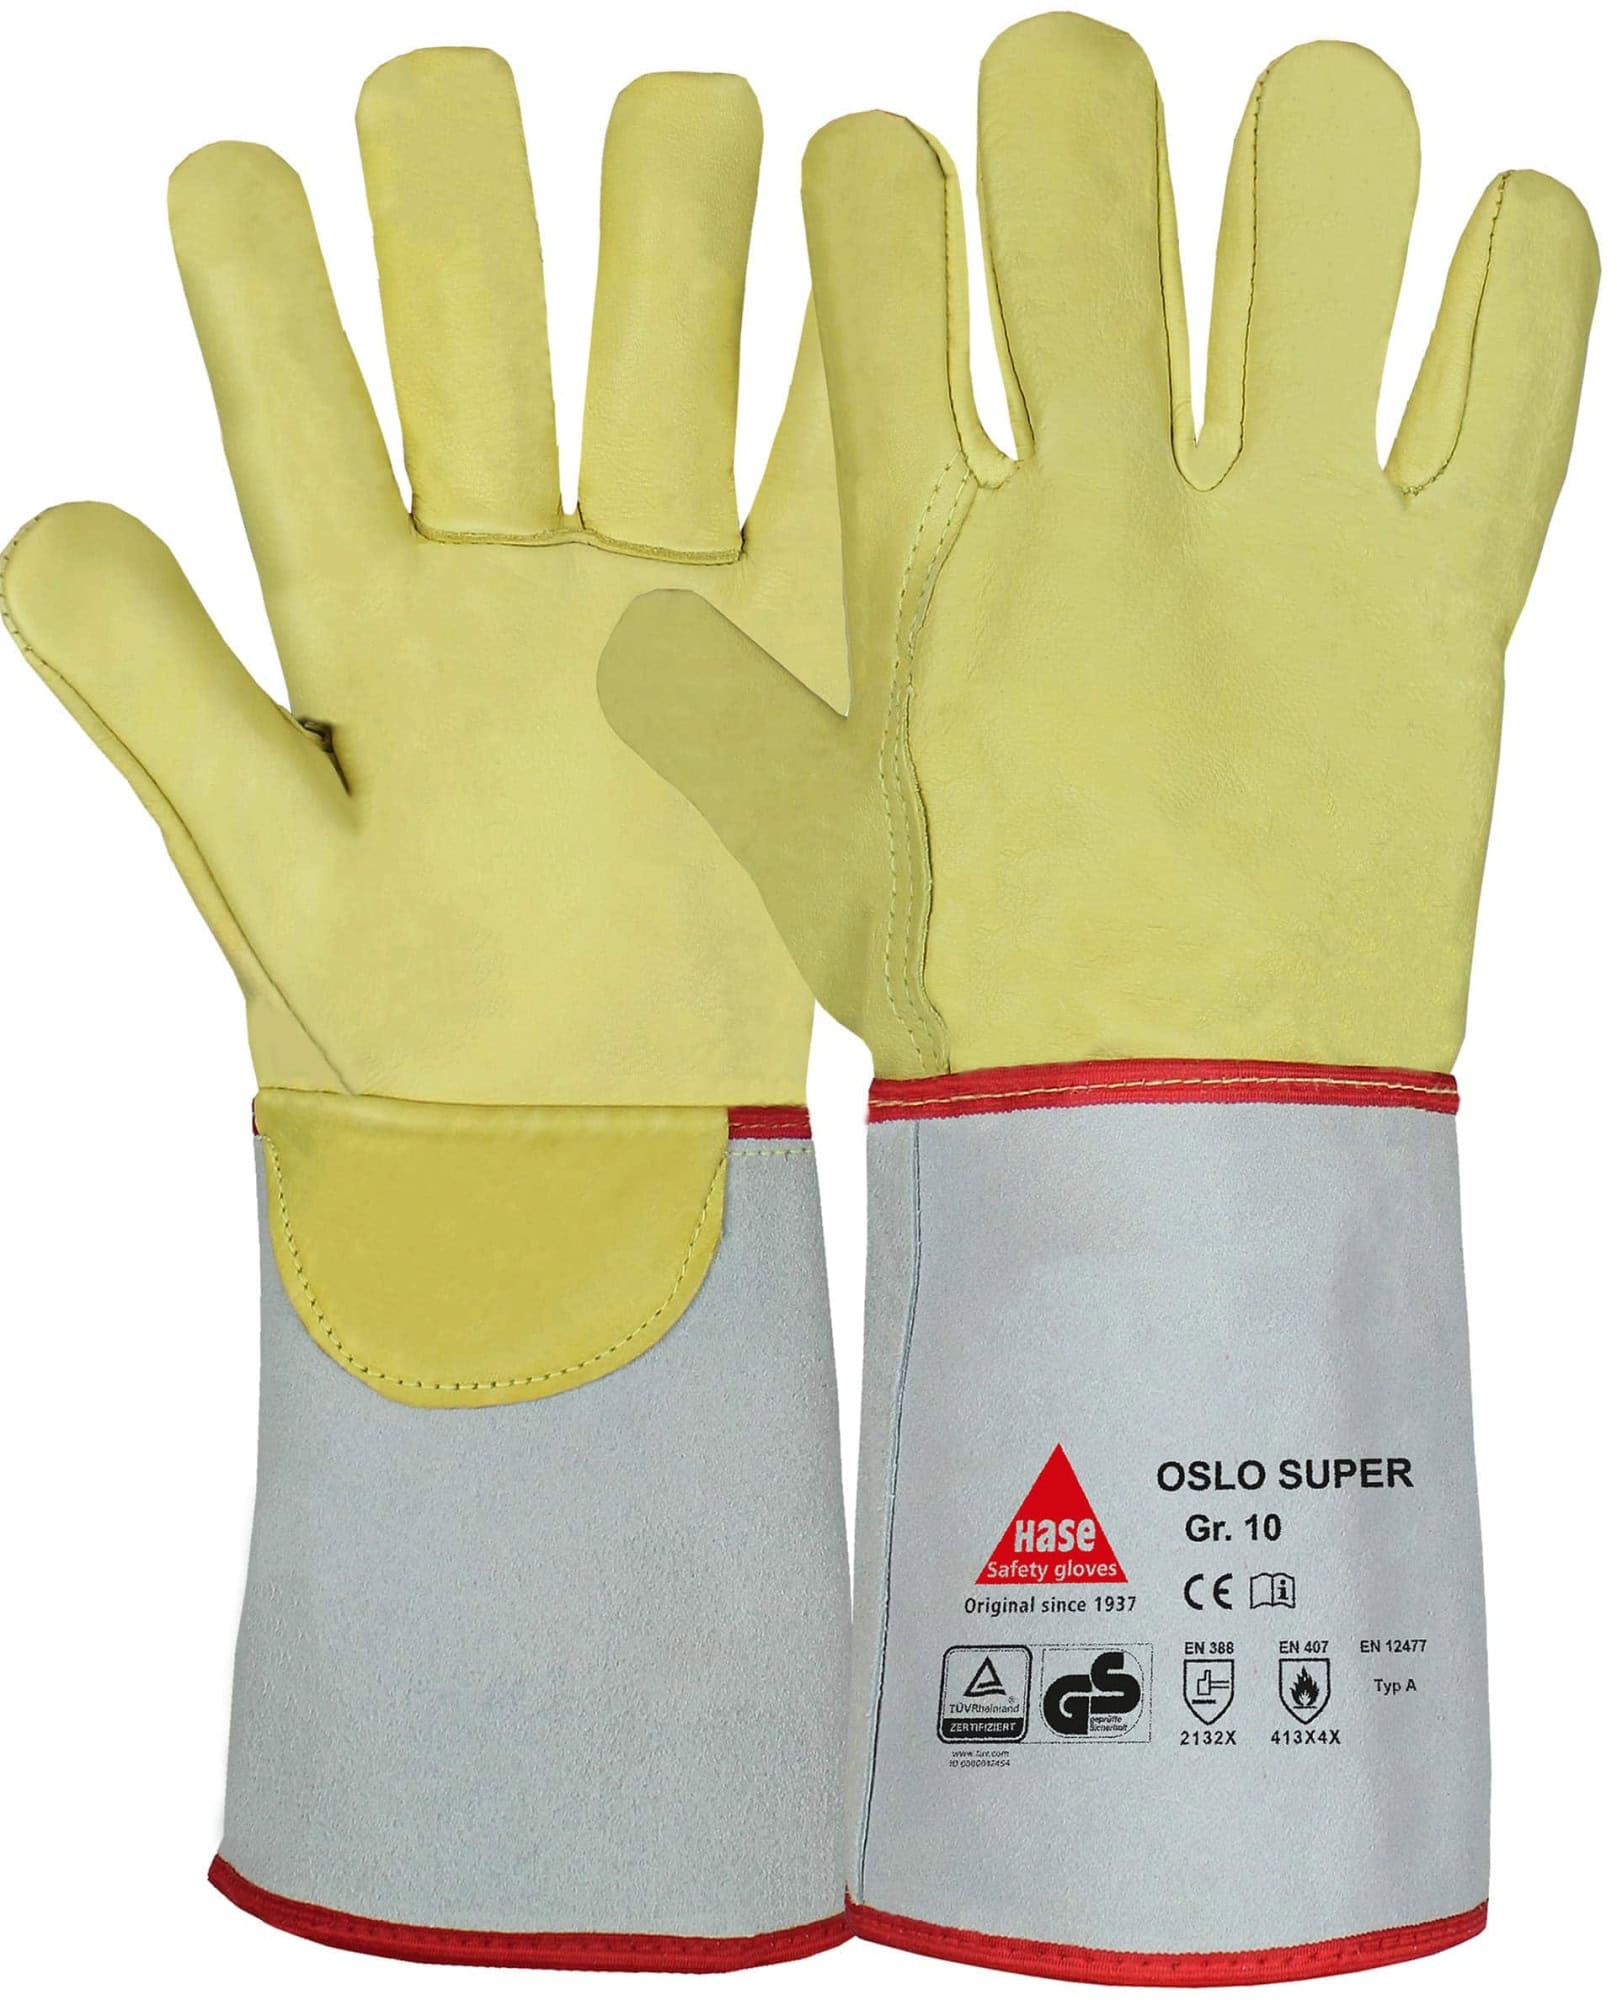 Hase Safety Gloves® OSLO SUPER 105100-10, Größe 10, Typ A, Kat. II, Natur/Gelb, Schweißerhandschuh für schwere Schweißarbeiten